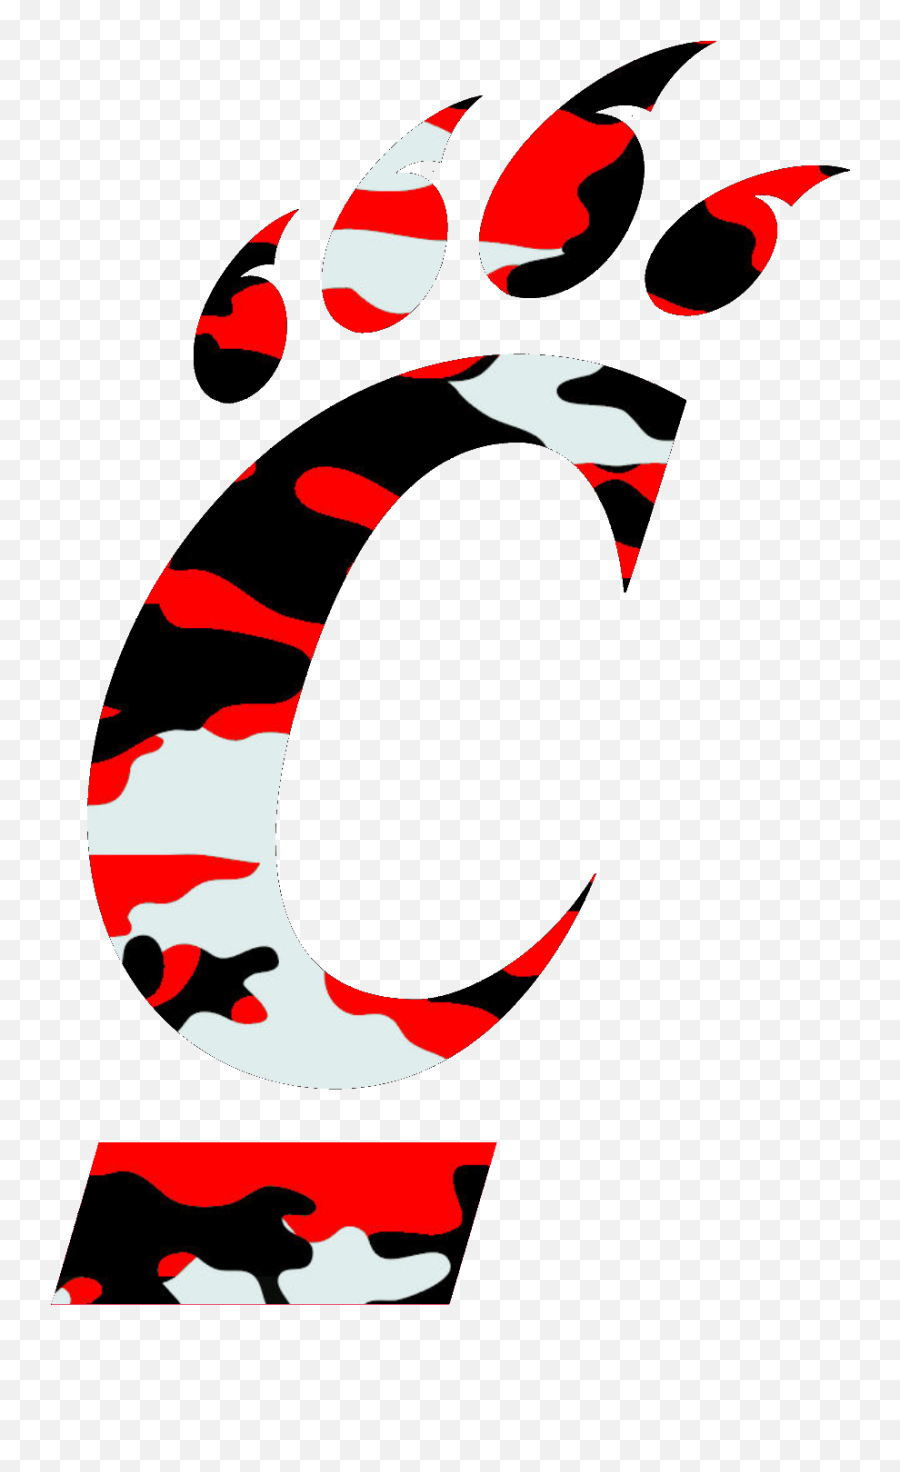 Cincinnati Bearcats Logo Transparent - Cincinnati Bearcat Logo Svg Png,Cincinnati Reds Logo Png